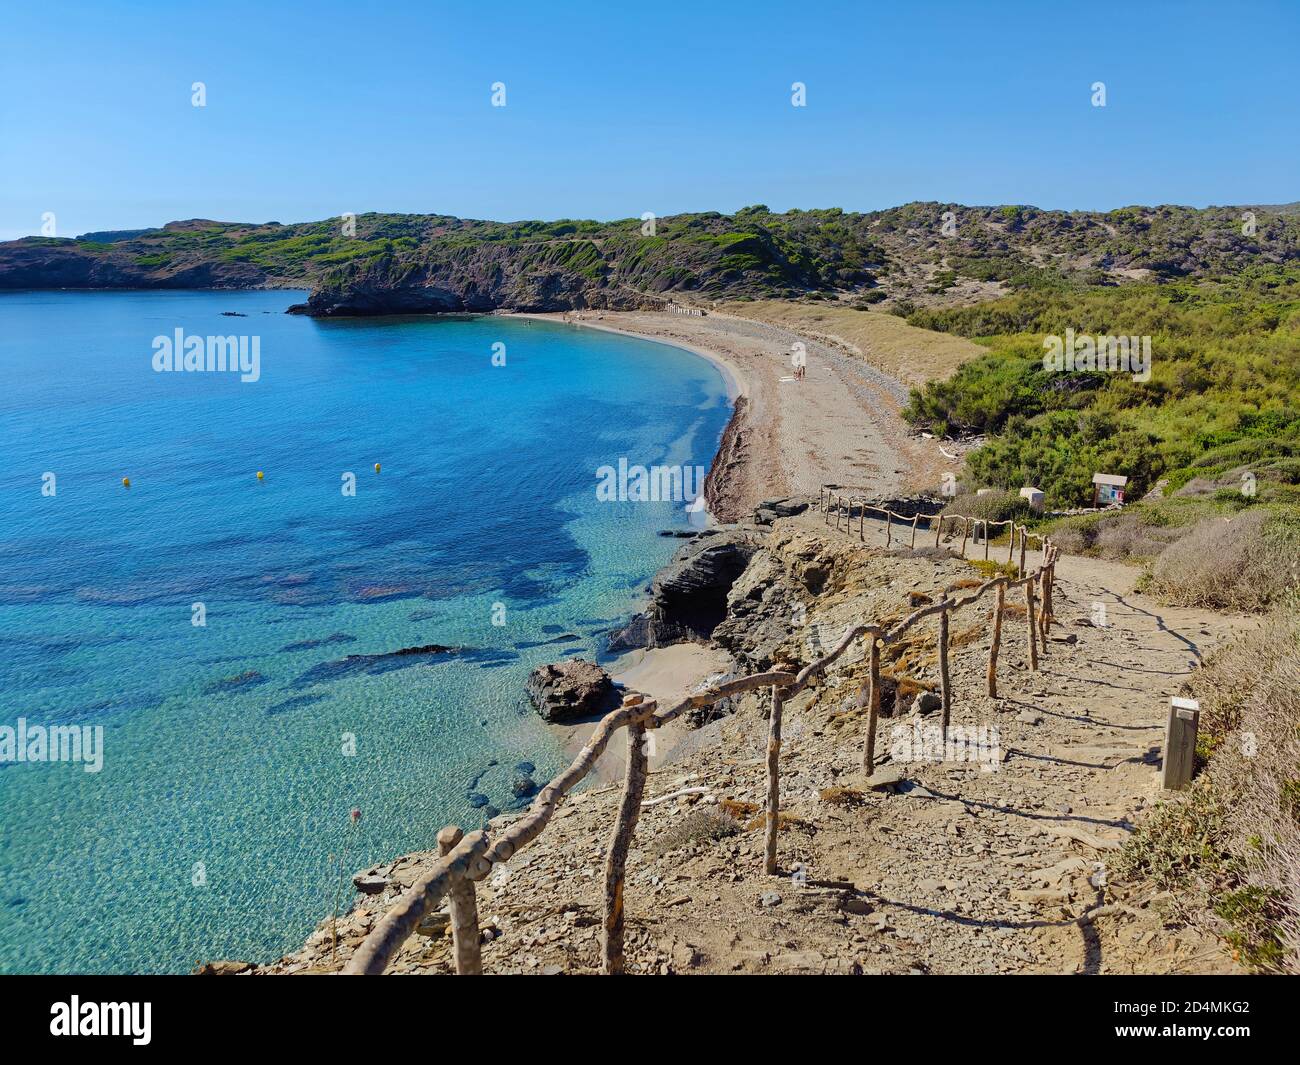 View of Cala d'en Tortuga, Menorca, Spain Stock Photo